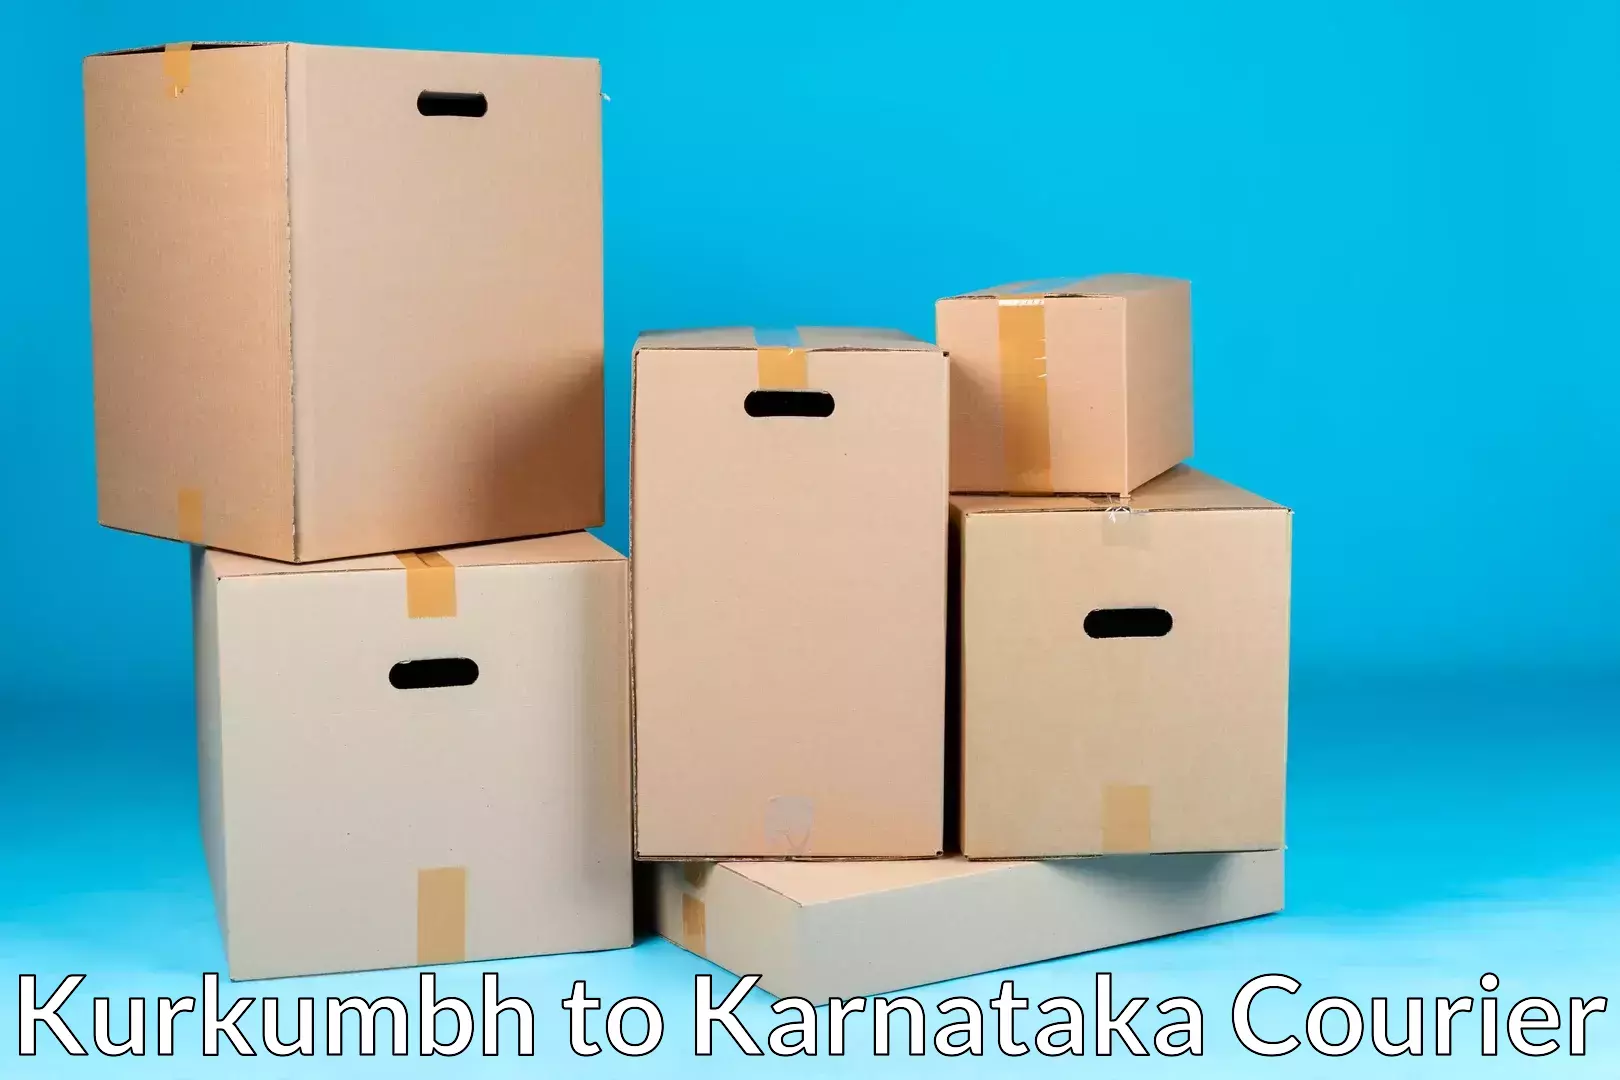 Moving and handling services Kurkumbh to Basavanagudi